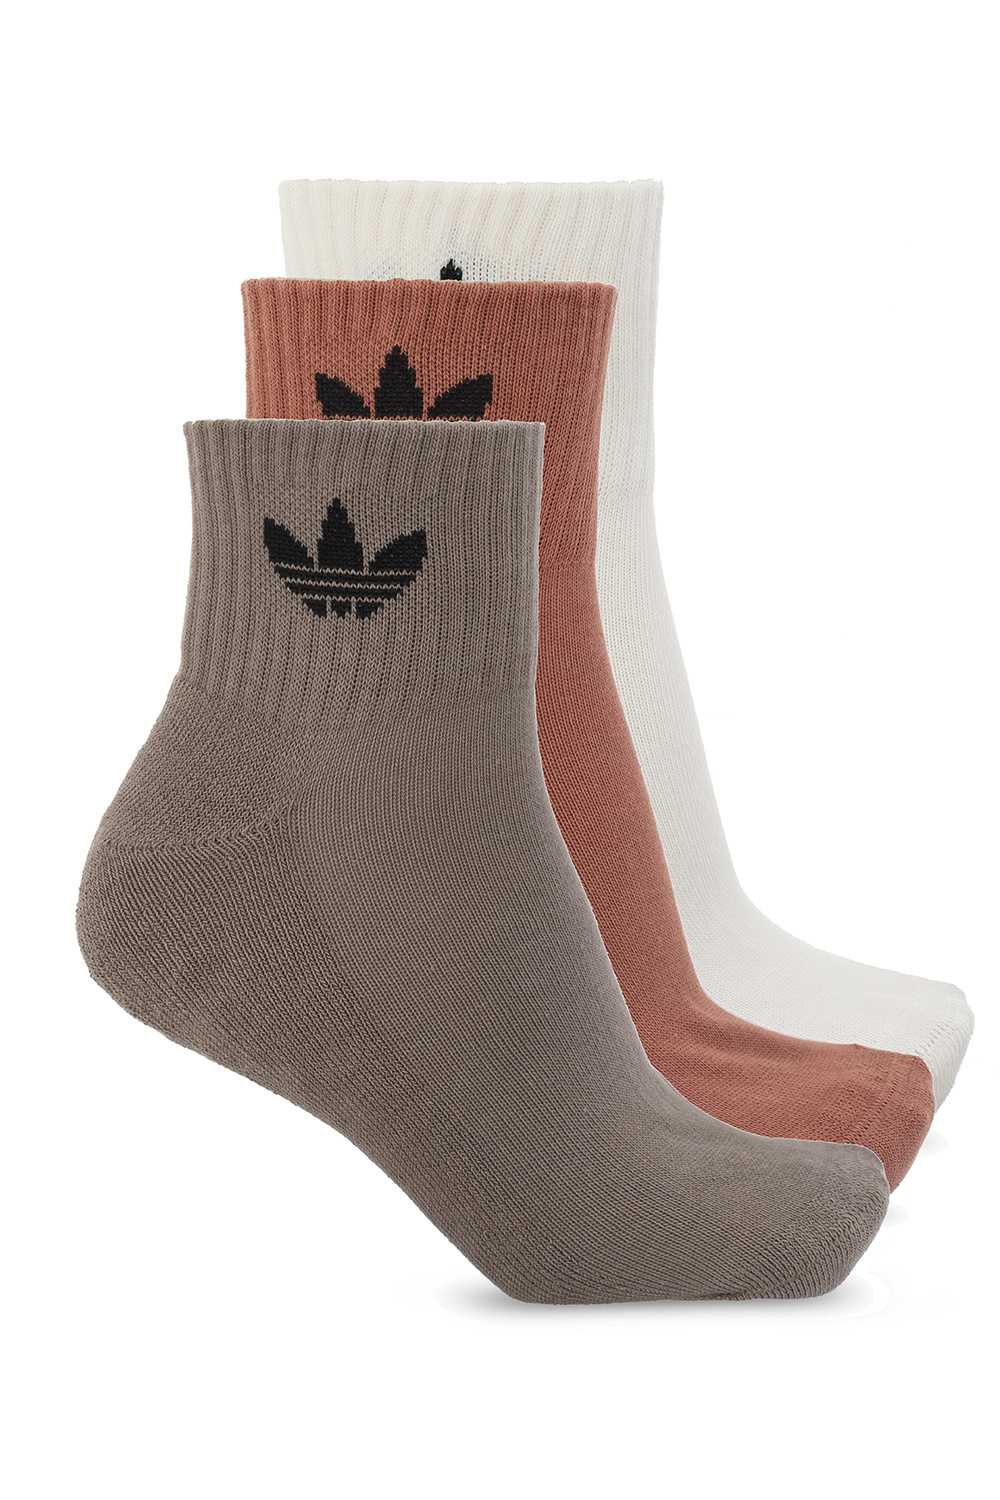 IetpShops Canada - Socks three - pack ADIDAS Originals - zapatillas adidas con broderi lineup